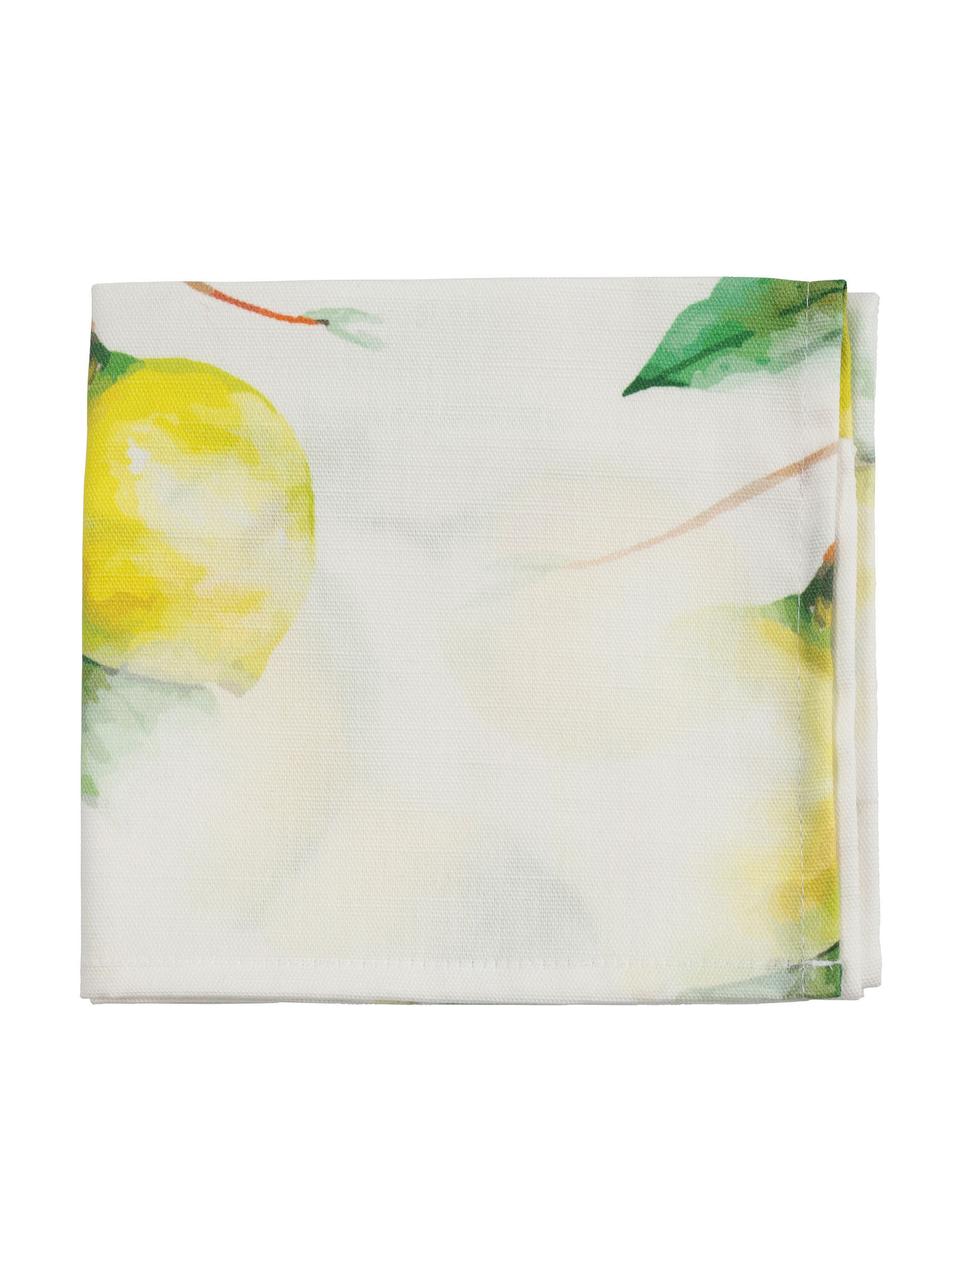 Tovagliolo di stoffa con motivo limoni Citron 4 pz, 100% cotone, Bianco latteo, giallo, verde, Larg. 35 x Lung. 35 cm